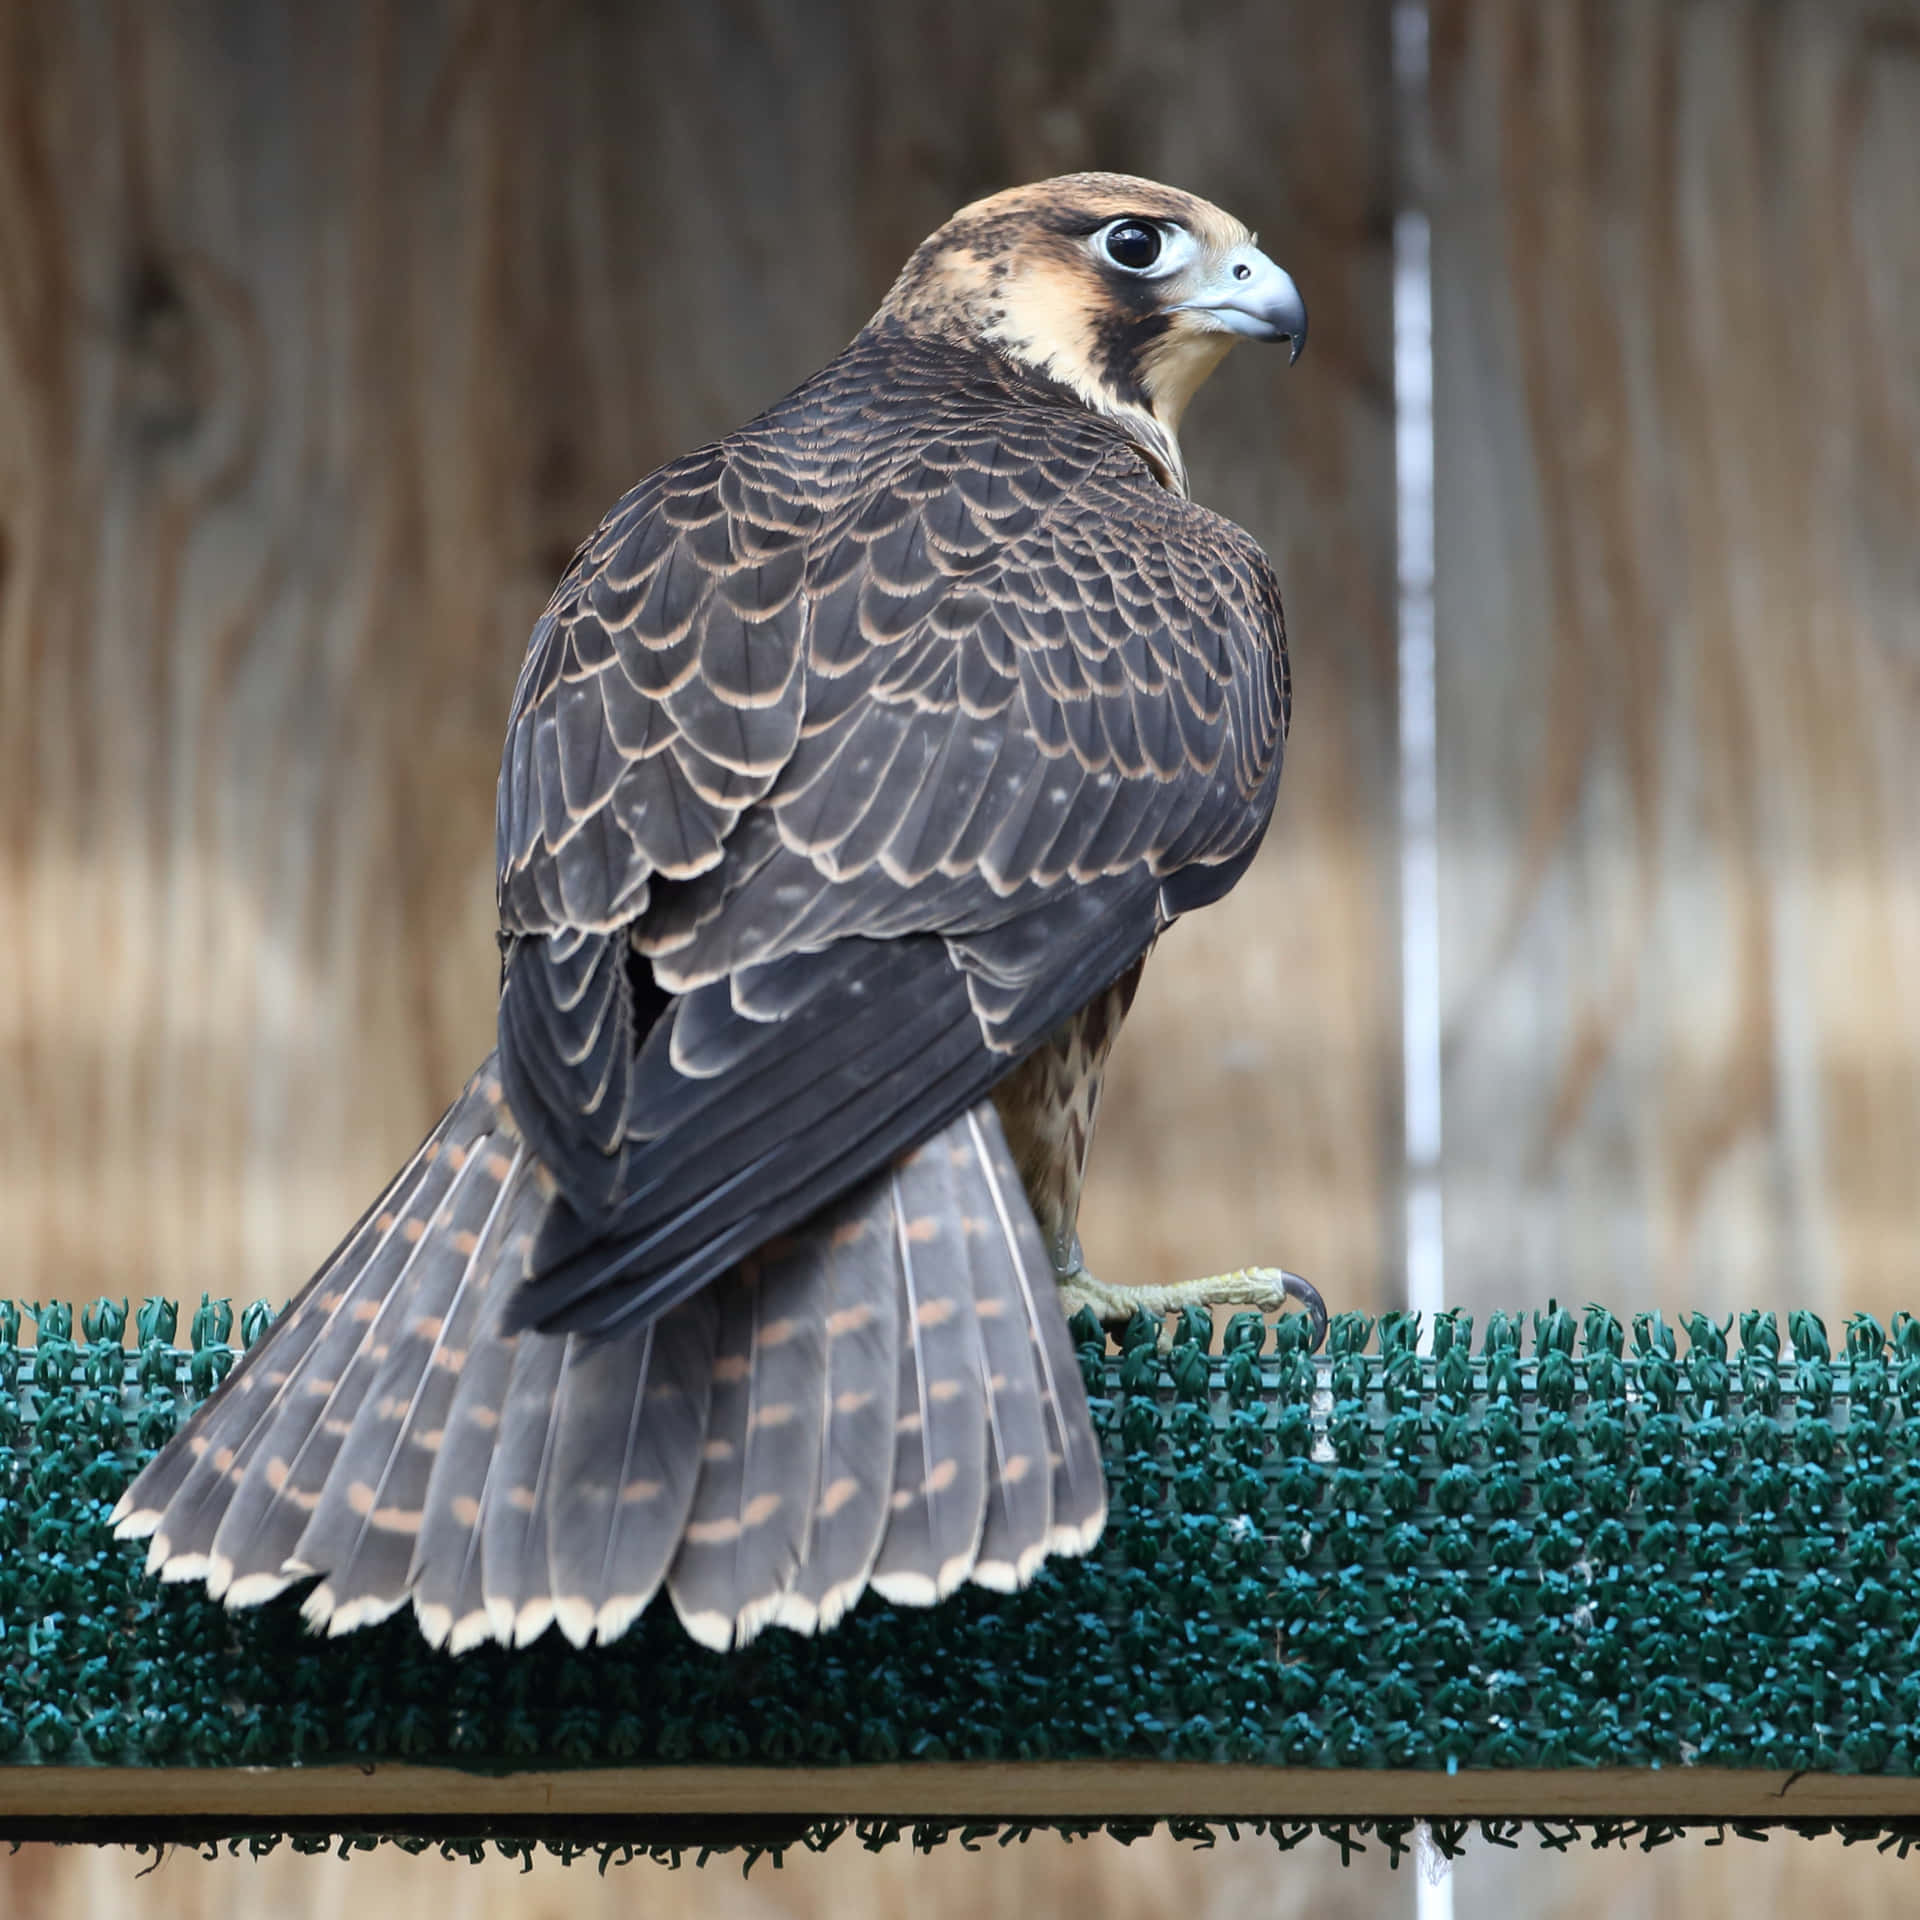 A falcon soars into the sky